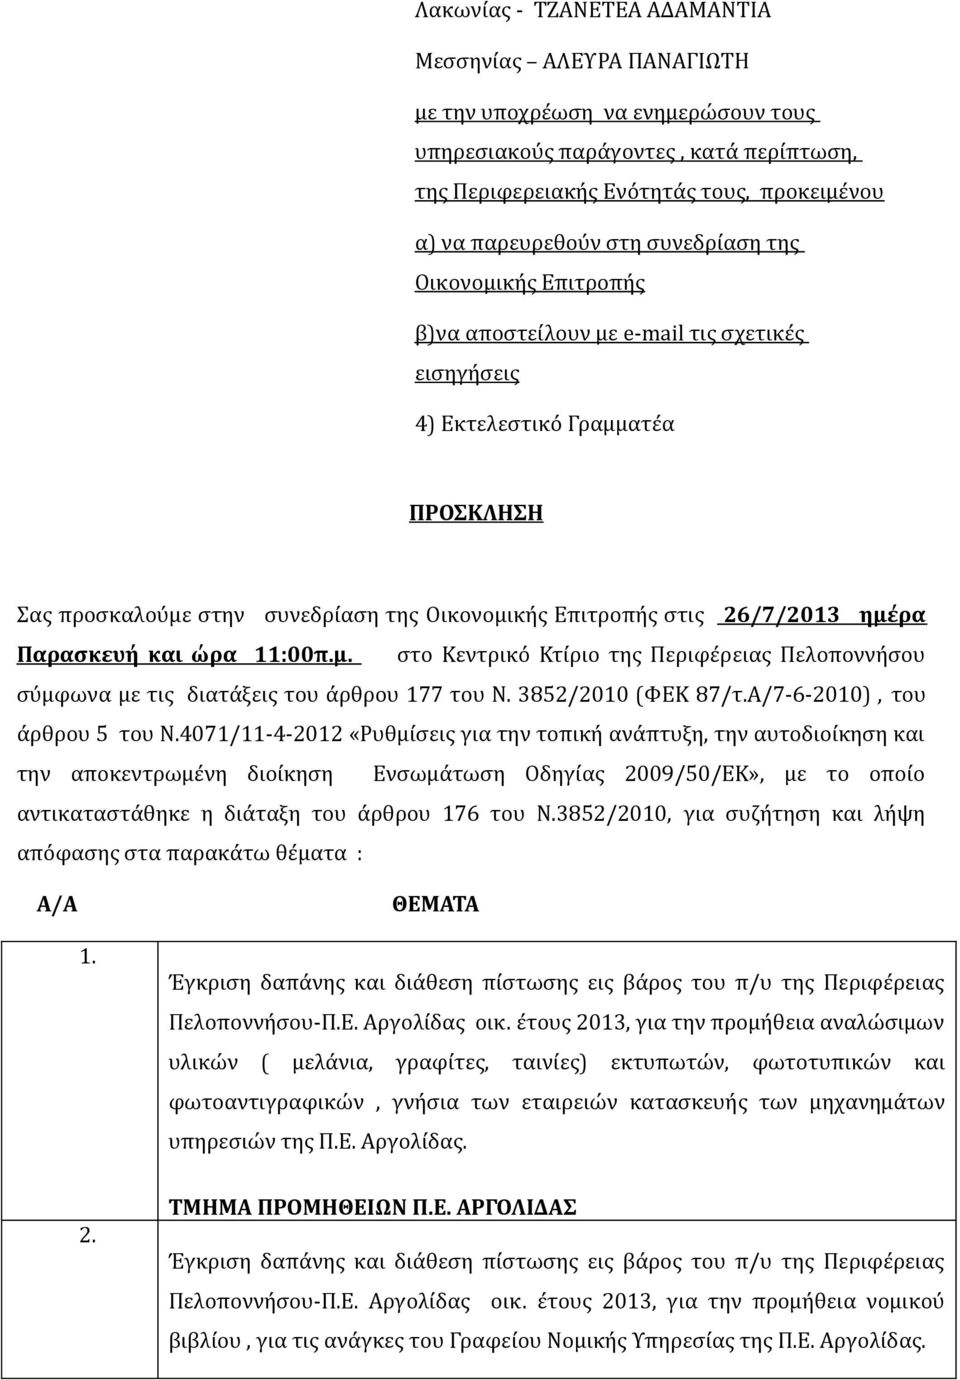 26/7/2013 ημέρα Παρασκευή και ώρα 11:00π.μ. στο Κεντρικό Κτίριο της Περιφέρειας Πελοποννήσου σύμφωνα με τις διατάξεις του άρθρου 177 του Ν. 3852/2010 (ΦΕΚ 87/τ.Α/7-6-2010), του άρθρου 5 του Ν.